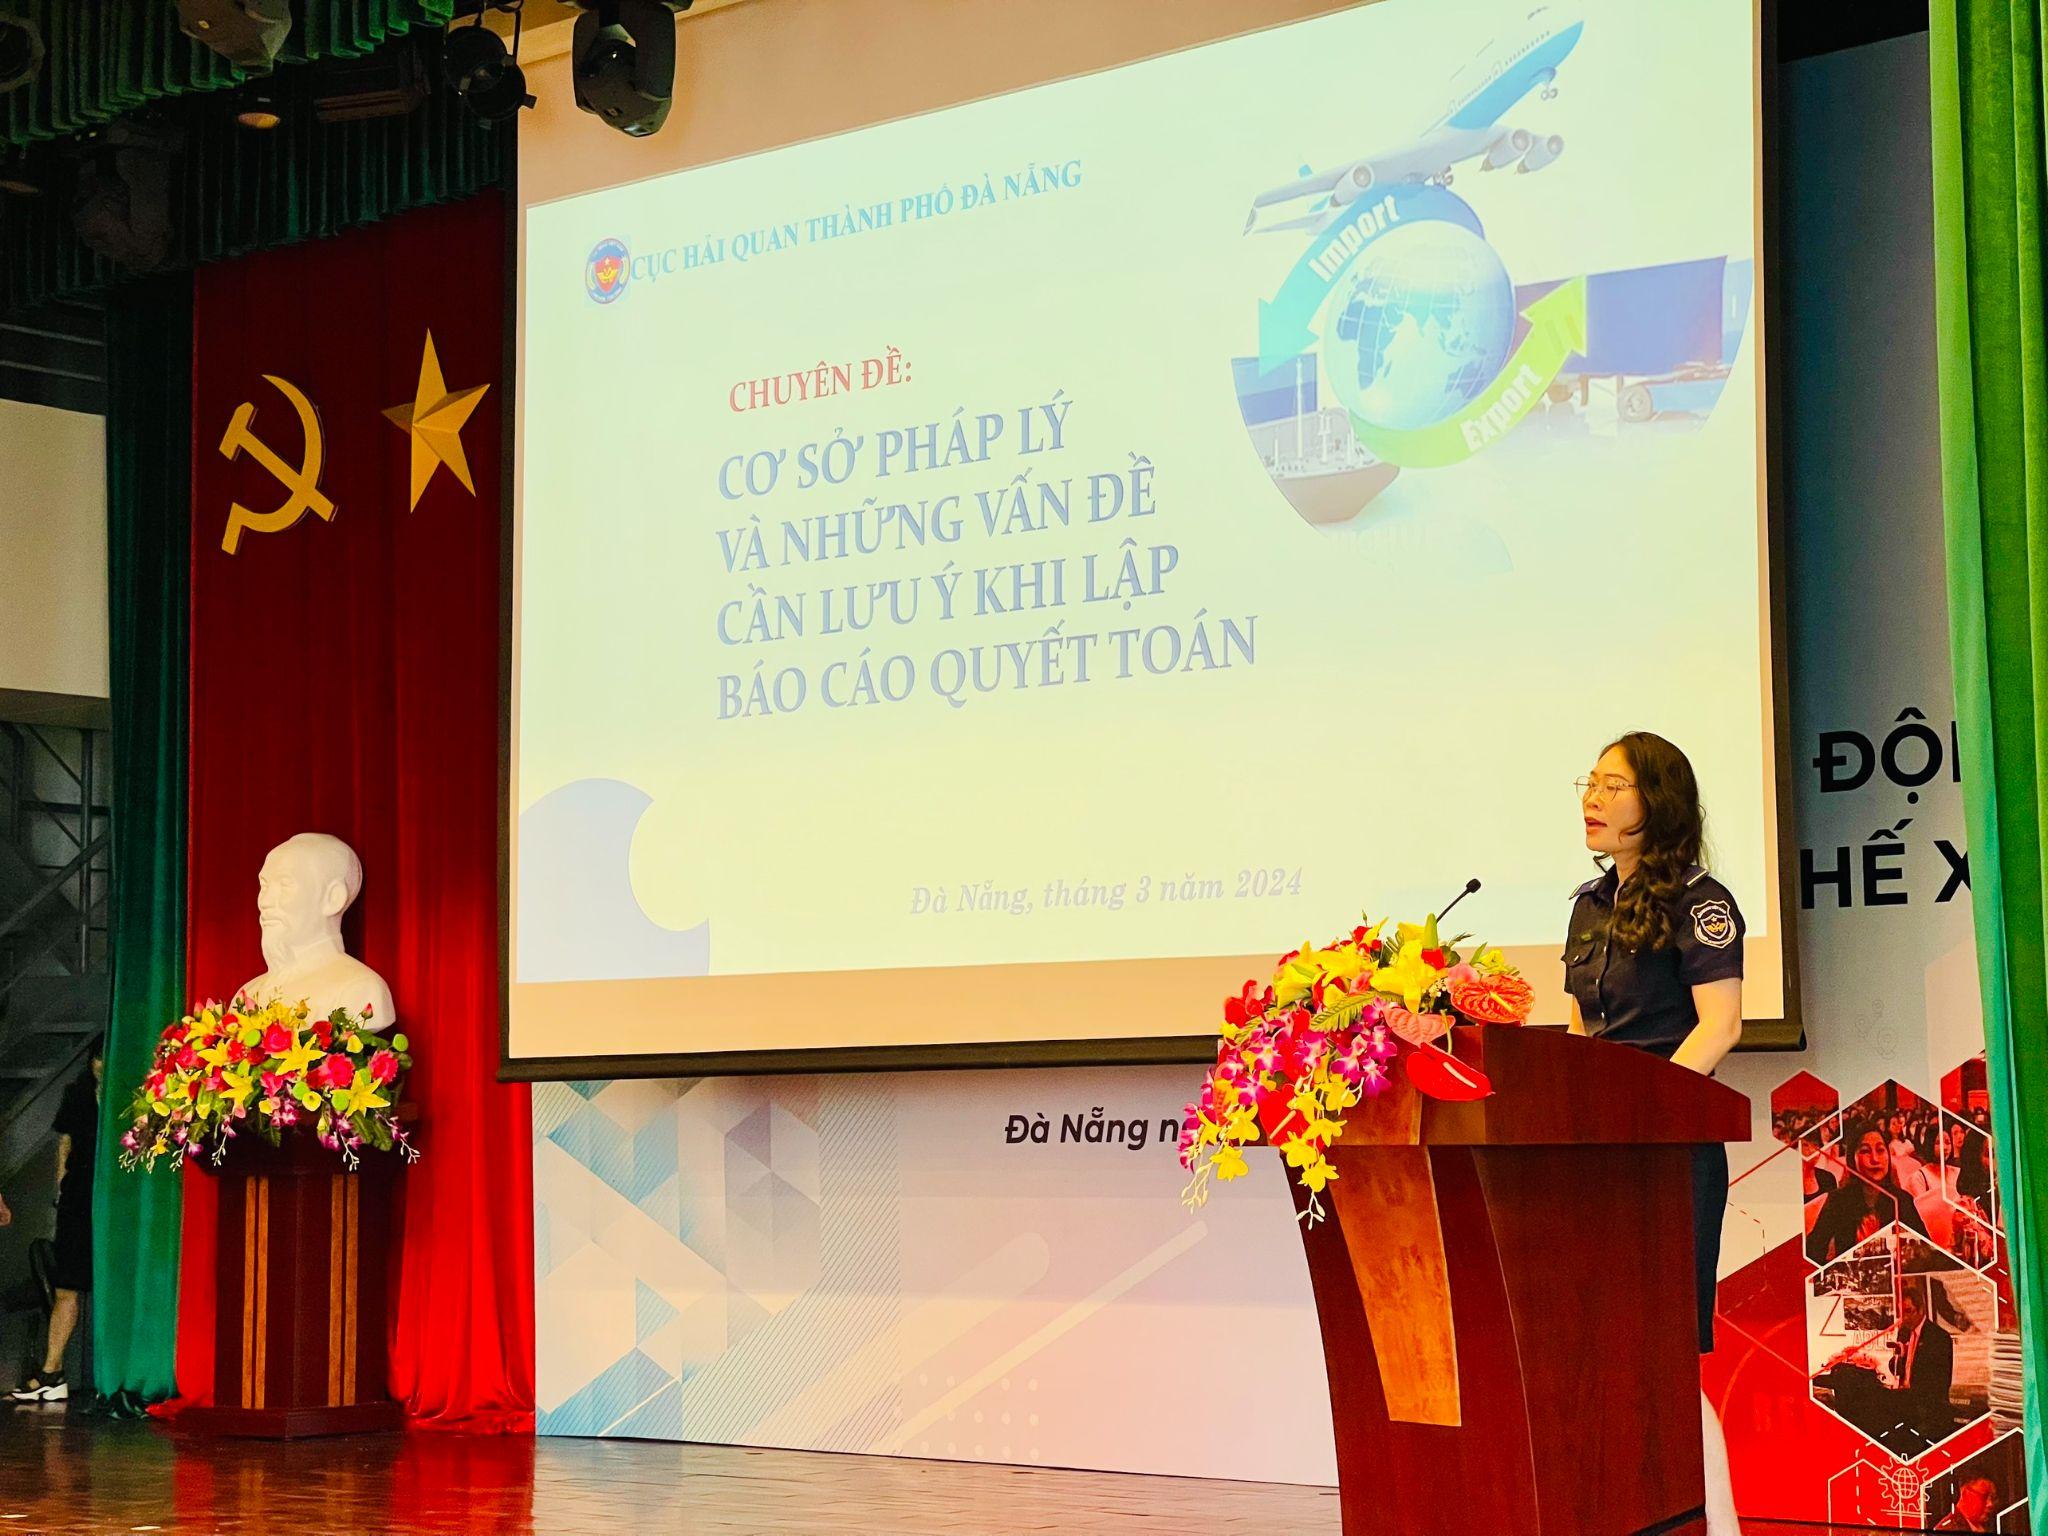 Bà Nguyễn Thị Thúy - Công chức phòng giám sát quản lý về Hải quan - Cục Hải quan Thành phố Đà Nẵng đang nhấn mạnh những vấn đề cần lưu ý